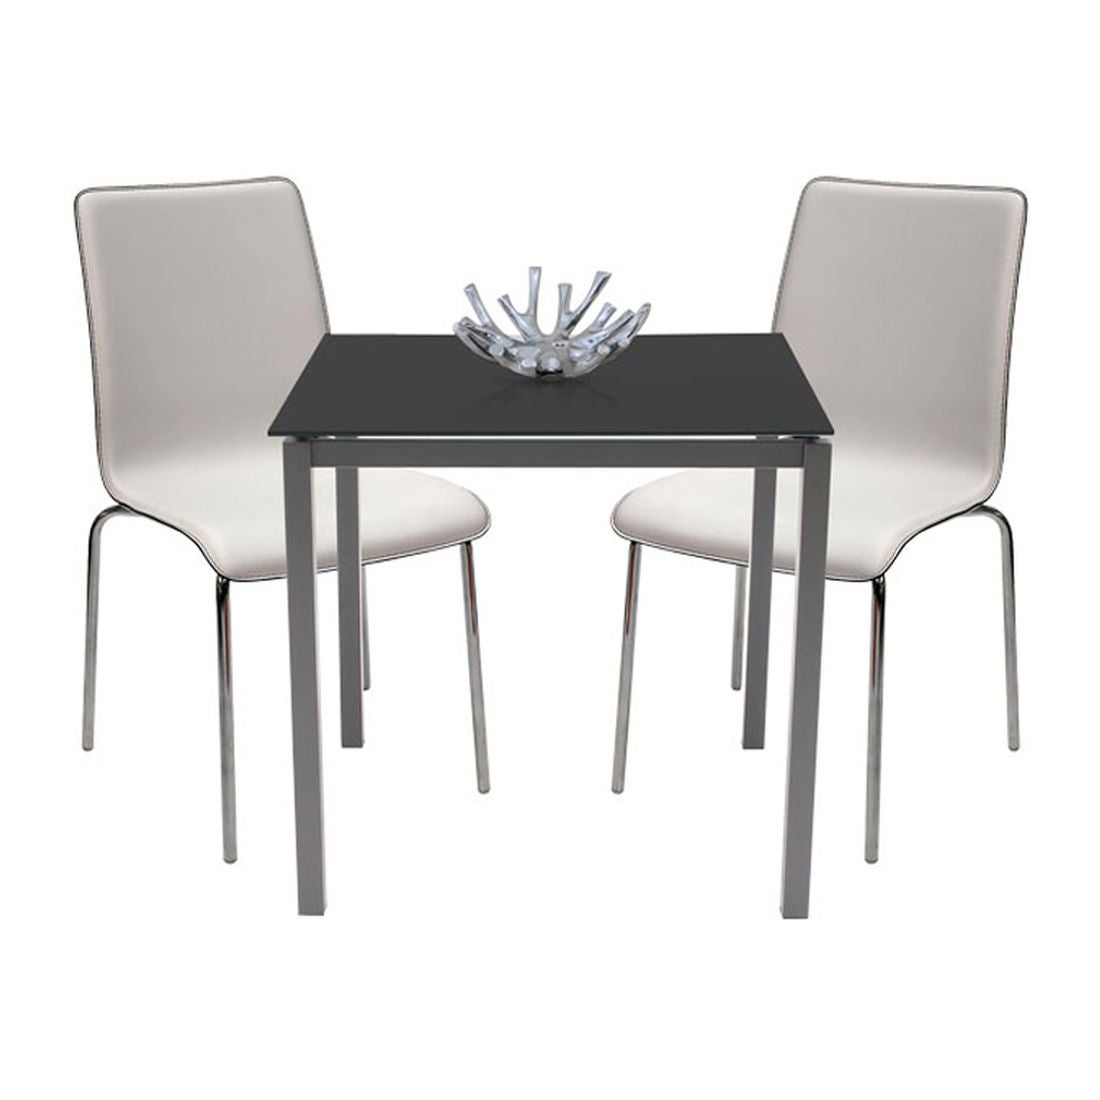 โต๊ะทานอาหาร โต๊ะอาหารขาเหล็กท๊อปกระจก รุ่น Ruber-SB Design Square